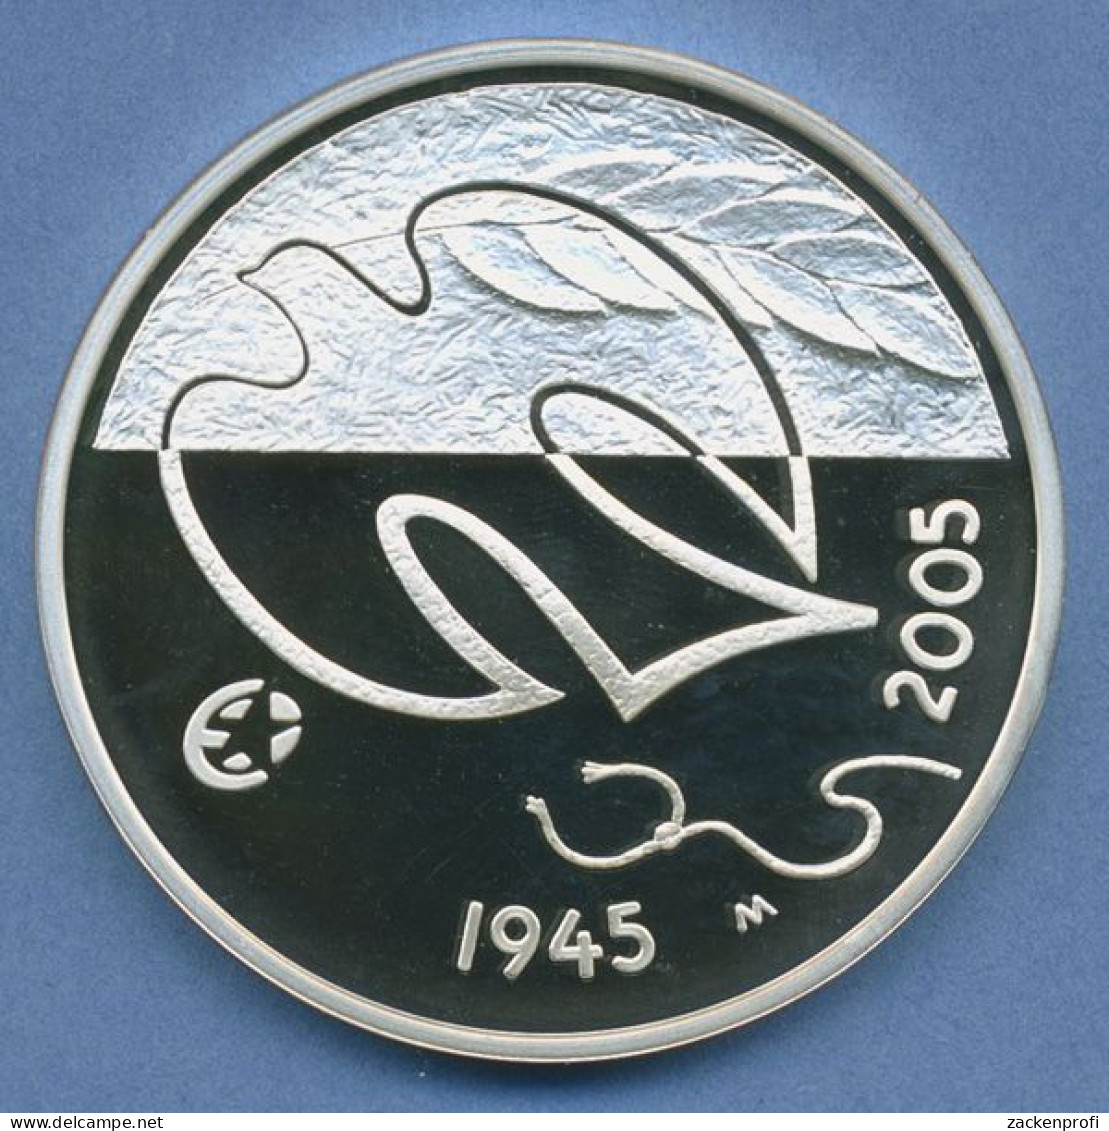 Finnland 10 Euro 2005 Frieden In Europa Friedenstaube, Silber, KM 120 PP (m4458) - Finlande